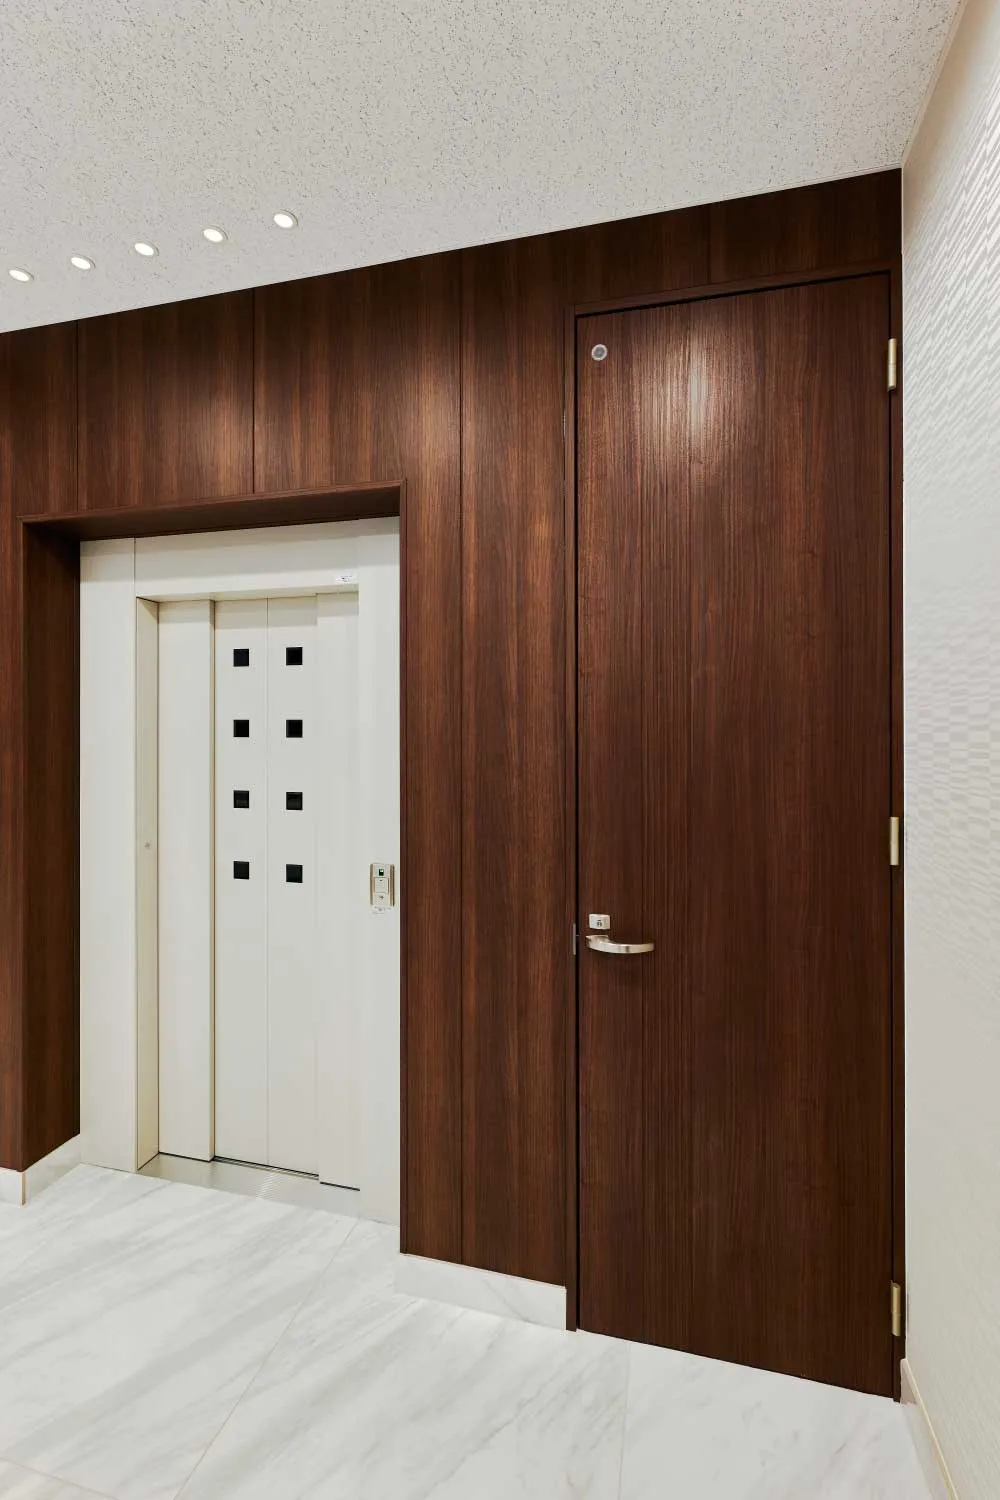 徳田建設株式会社 本社事務所 : 室内ドア：ハピア ドア 〈ダルブラウン〉
壁材：グラビオUB 木目柄〈UB30〉